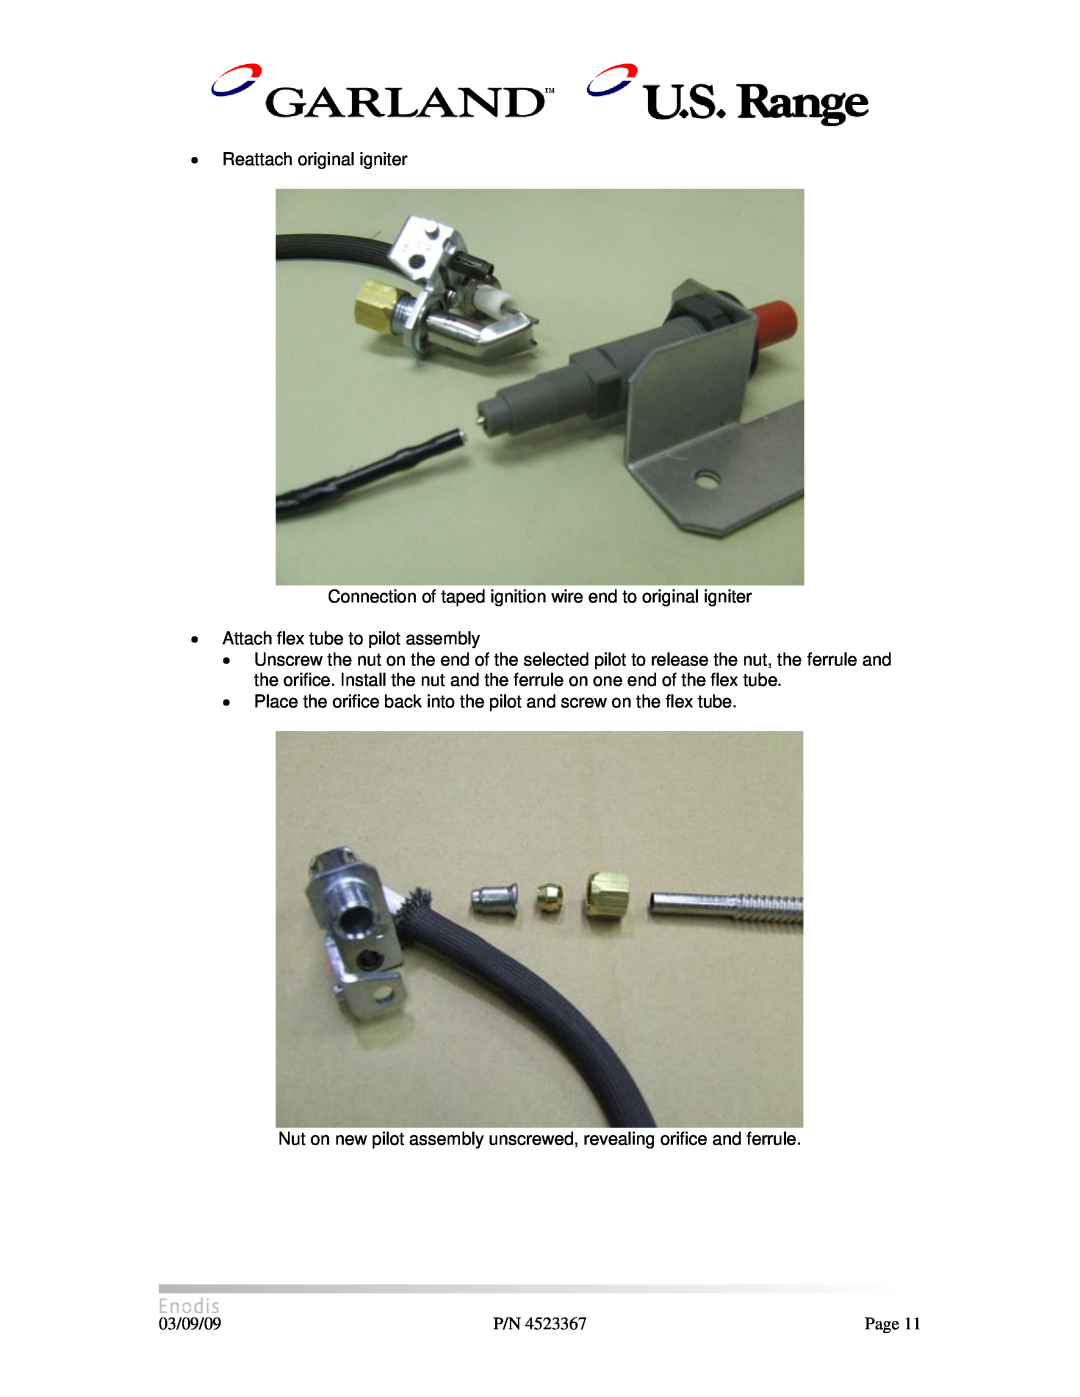 Garland H280 manual ∙ Reattach original igniter 